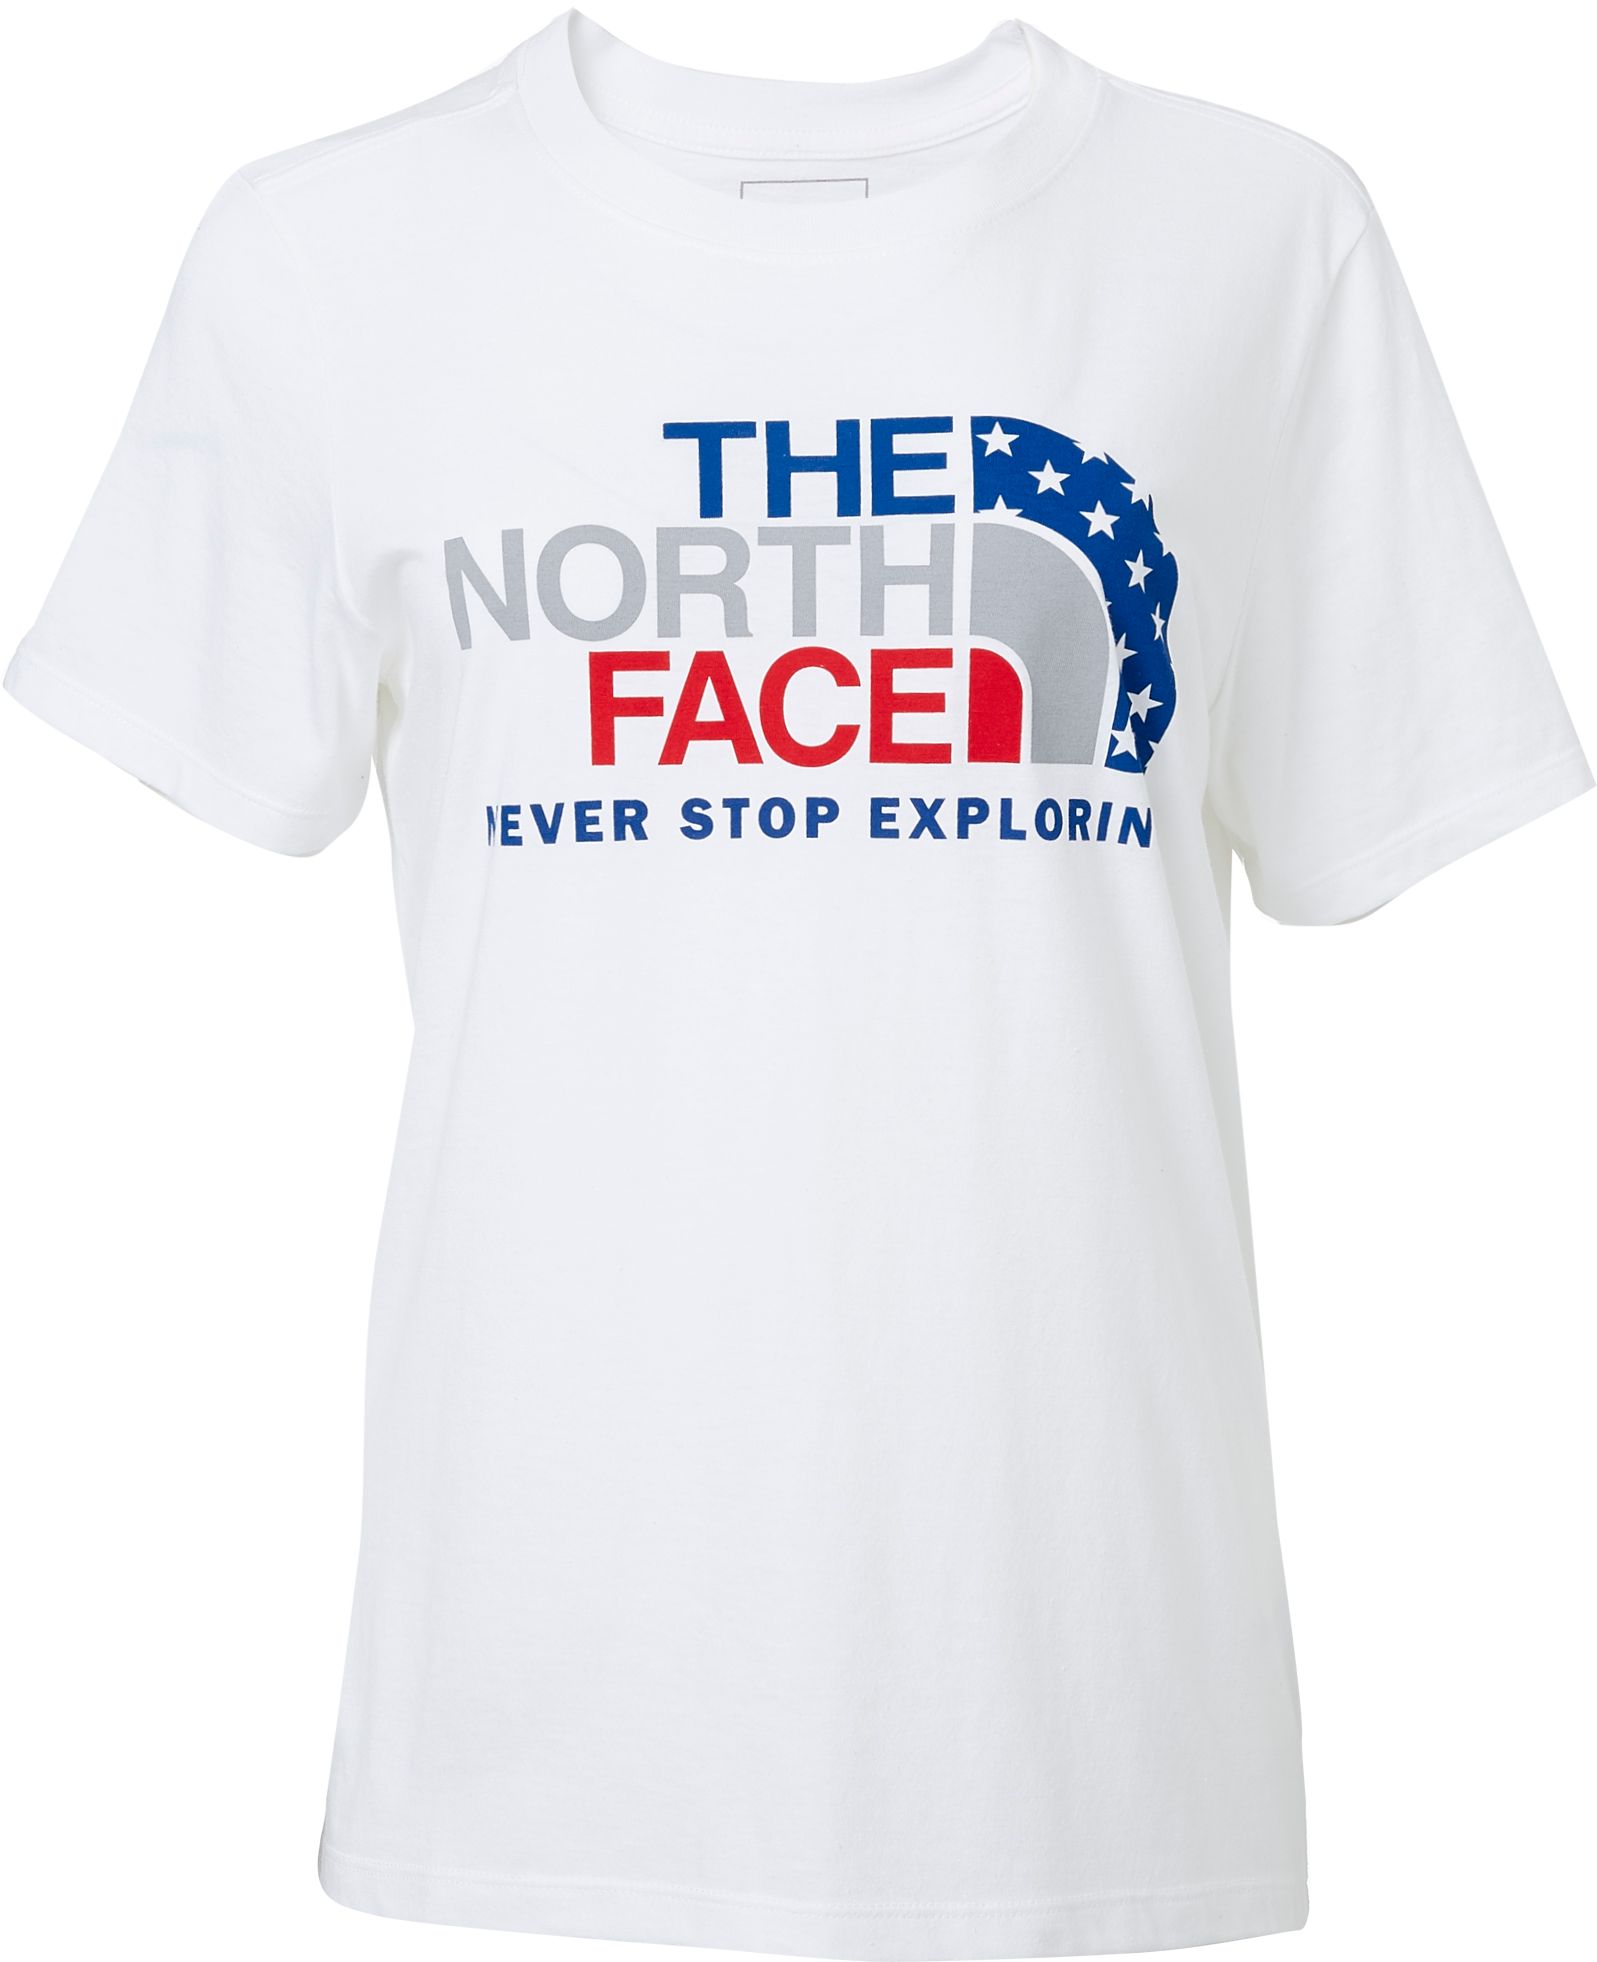 north face sunblocker shirt